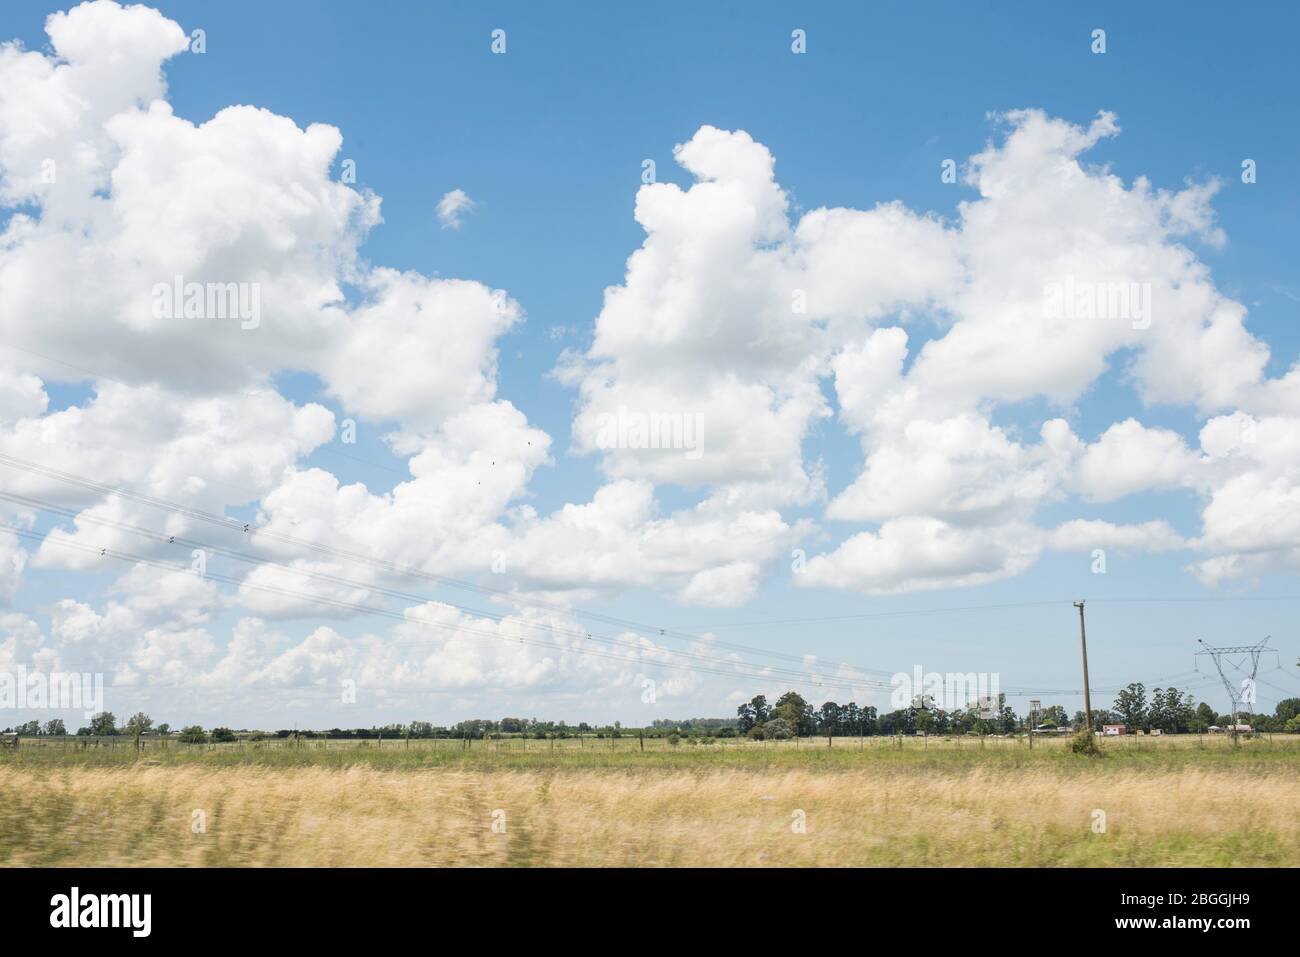 Paesaggio stradale, estate, cielo blu e nuvole bianche, linee elettriche e tralicci Foto Stock